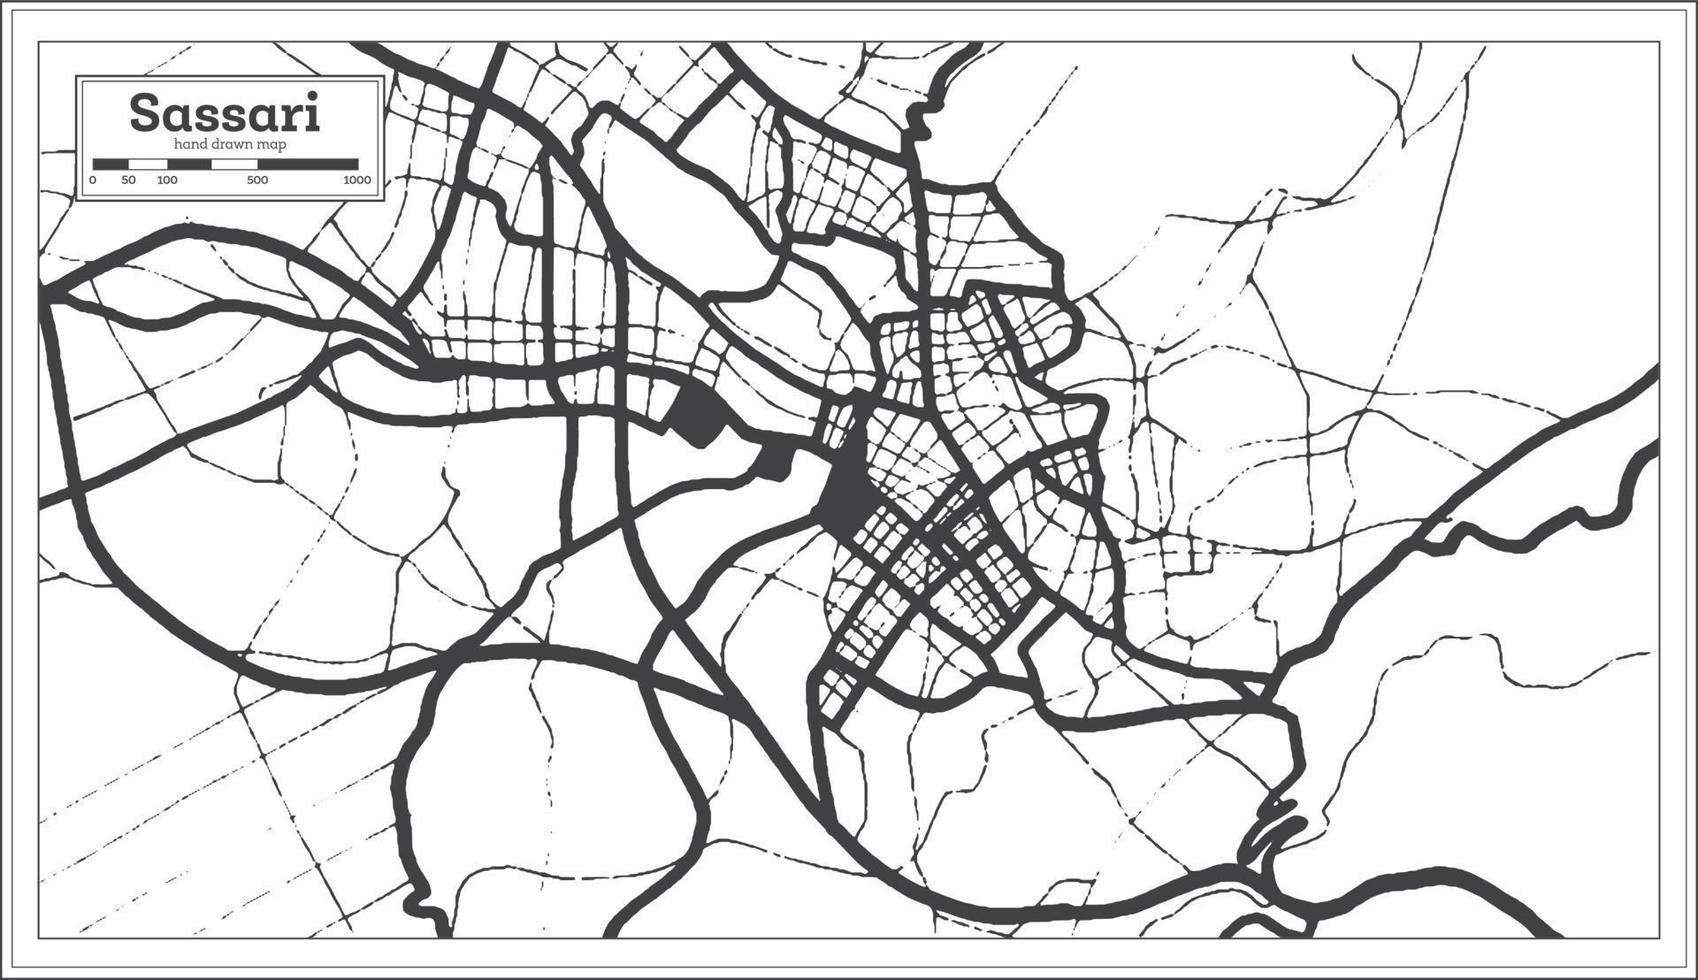 sassari Italien stad Karta i svart och vit Färg i retro stil. översikt Karta. vektor